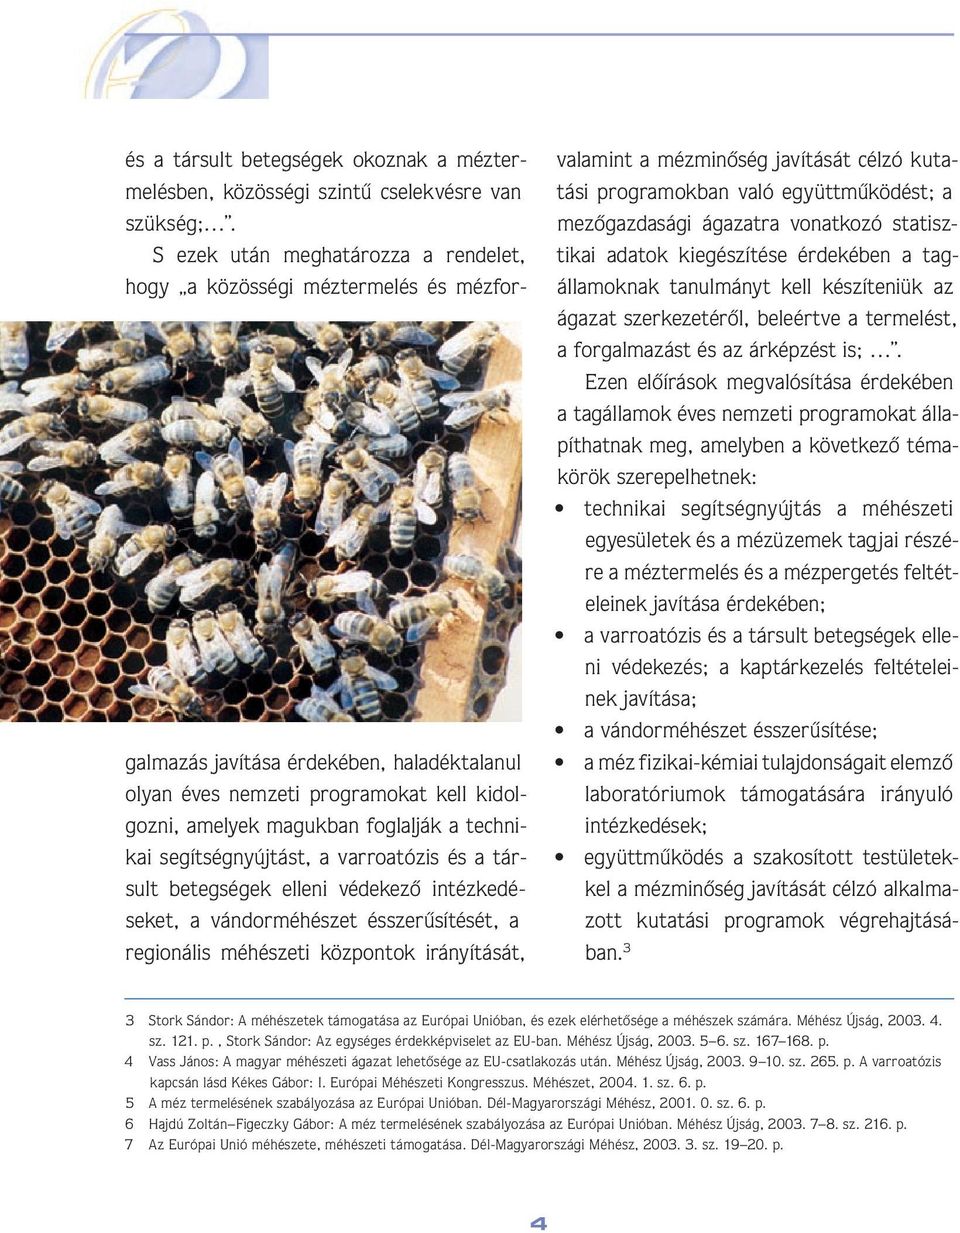 technikai segítségnyújtást, a varroatózis és a társult betegségek elleni védekezô intézkedéseket, a vándorméhészet ésszerûsítését, a regionális méhészeti központok irányítását, valamint a mézminôség